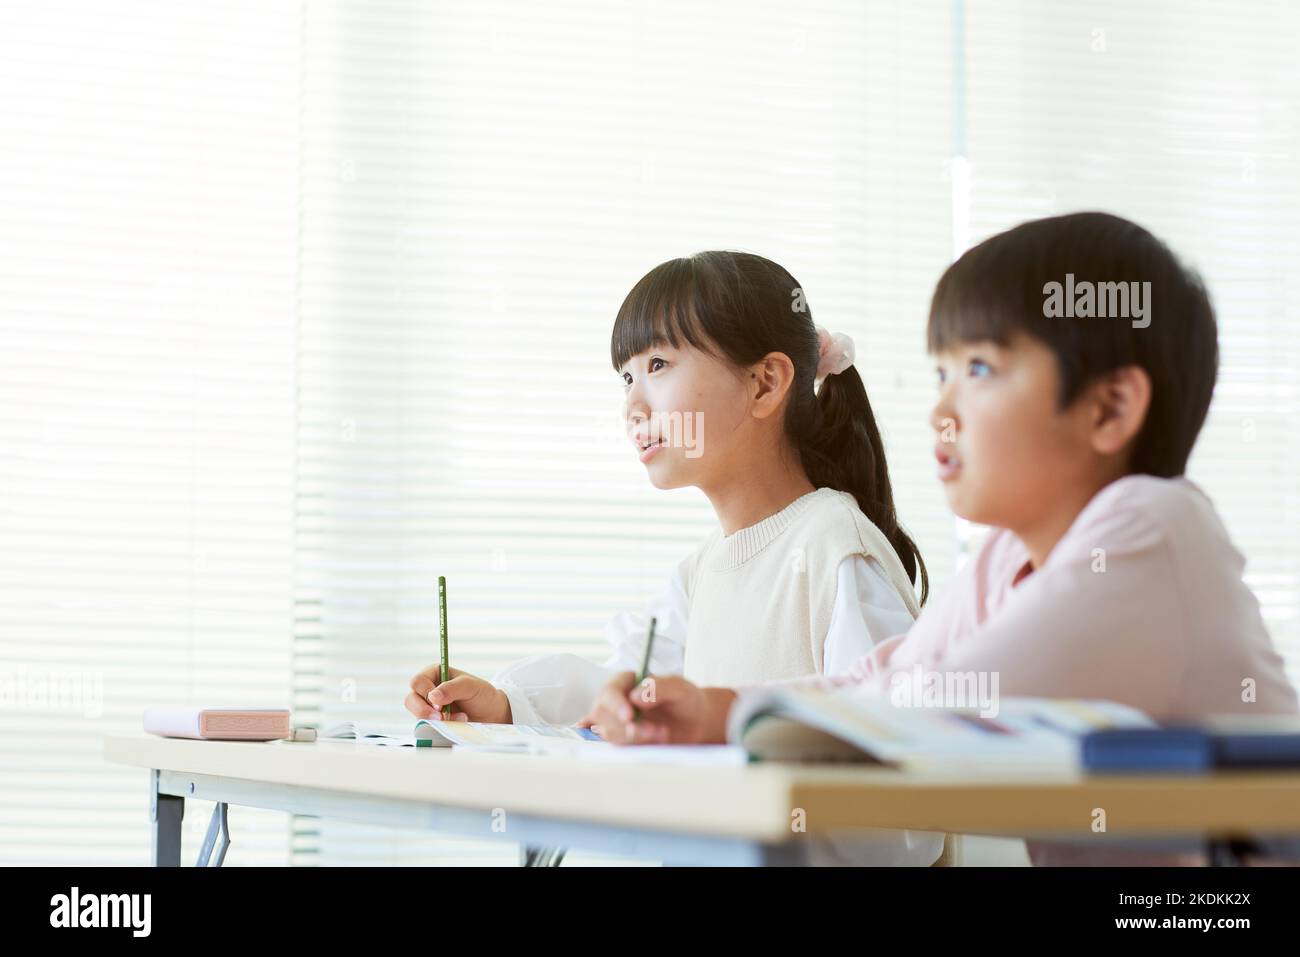 Japanische Kinder studieren Stockfoto